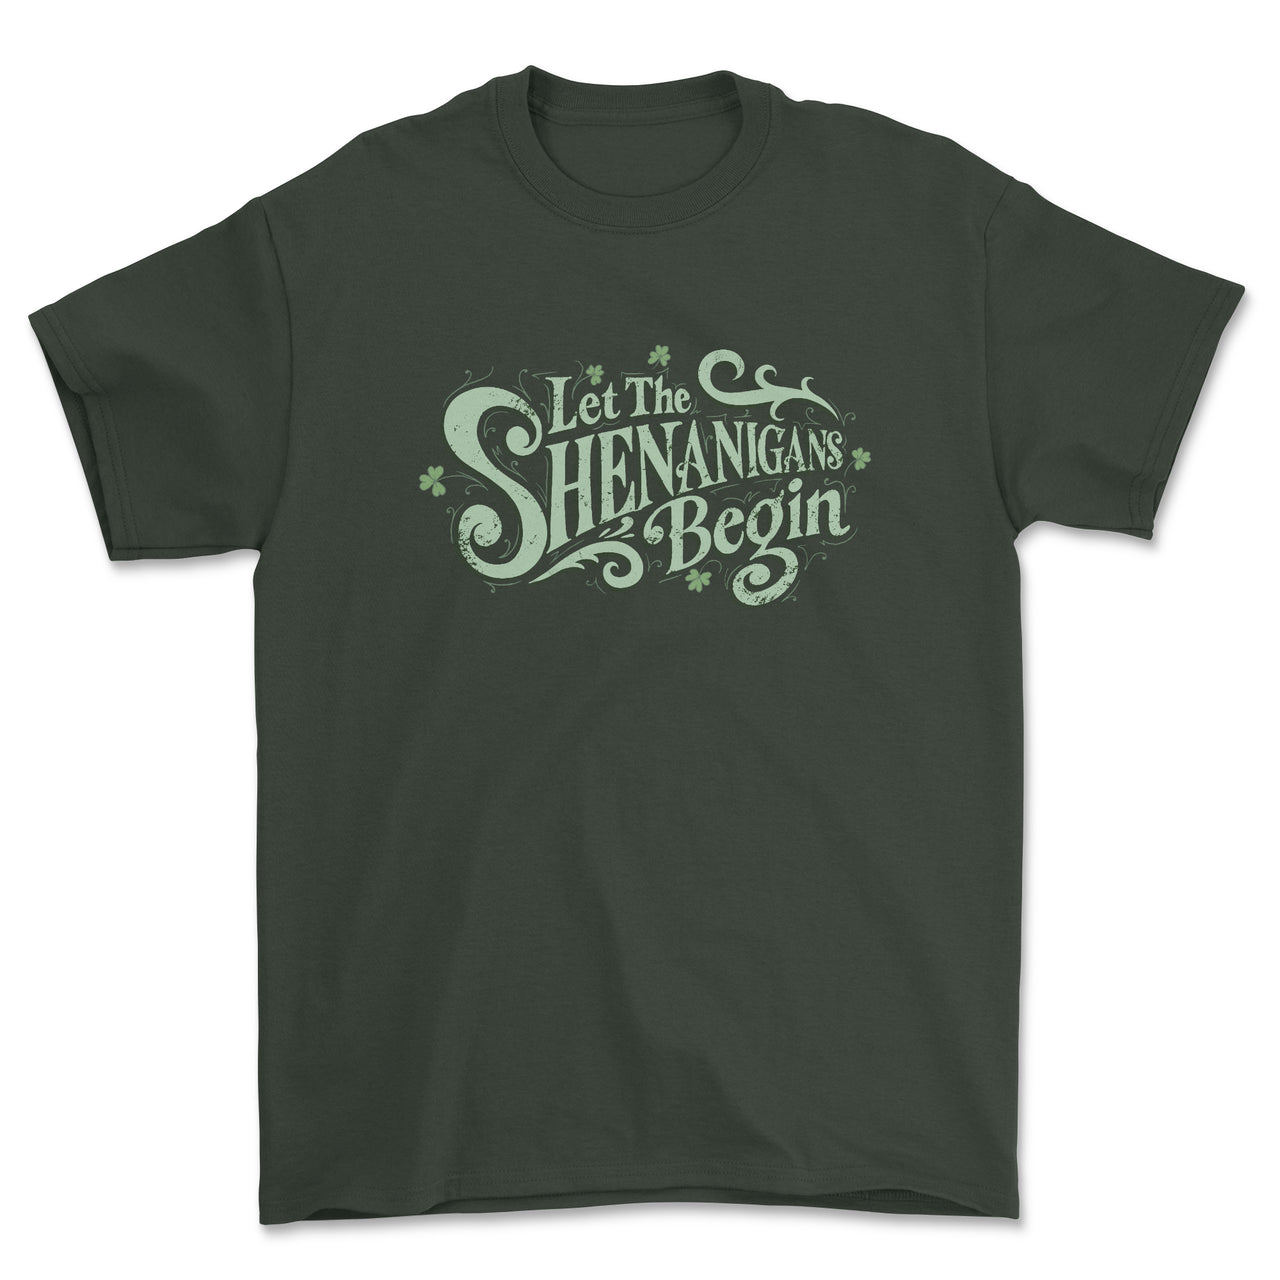 Let the Shenanigans Begin T-Shirt